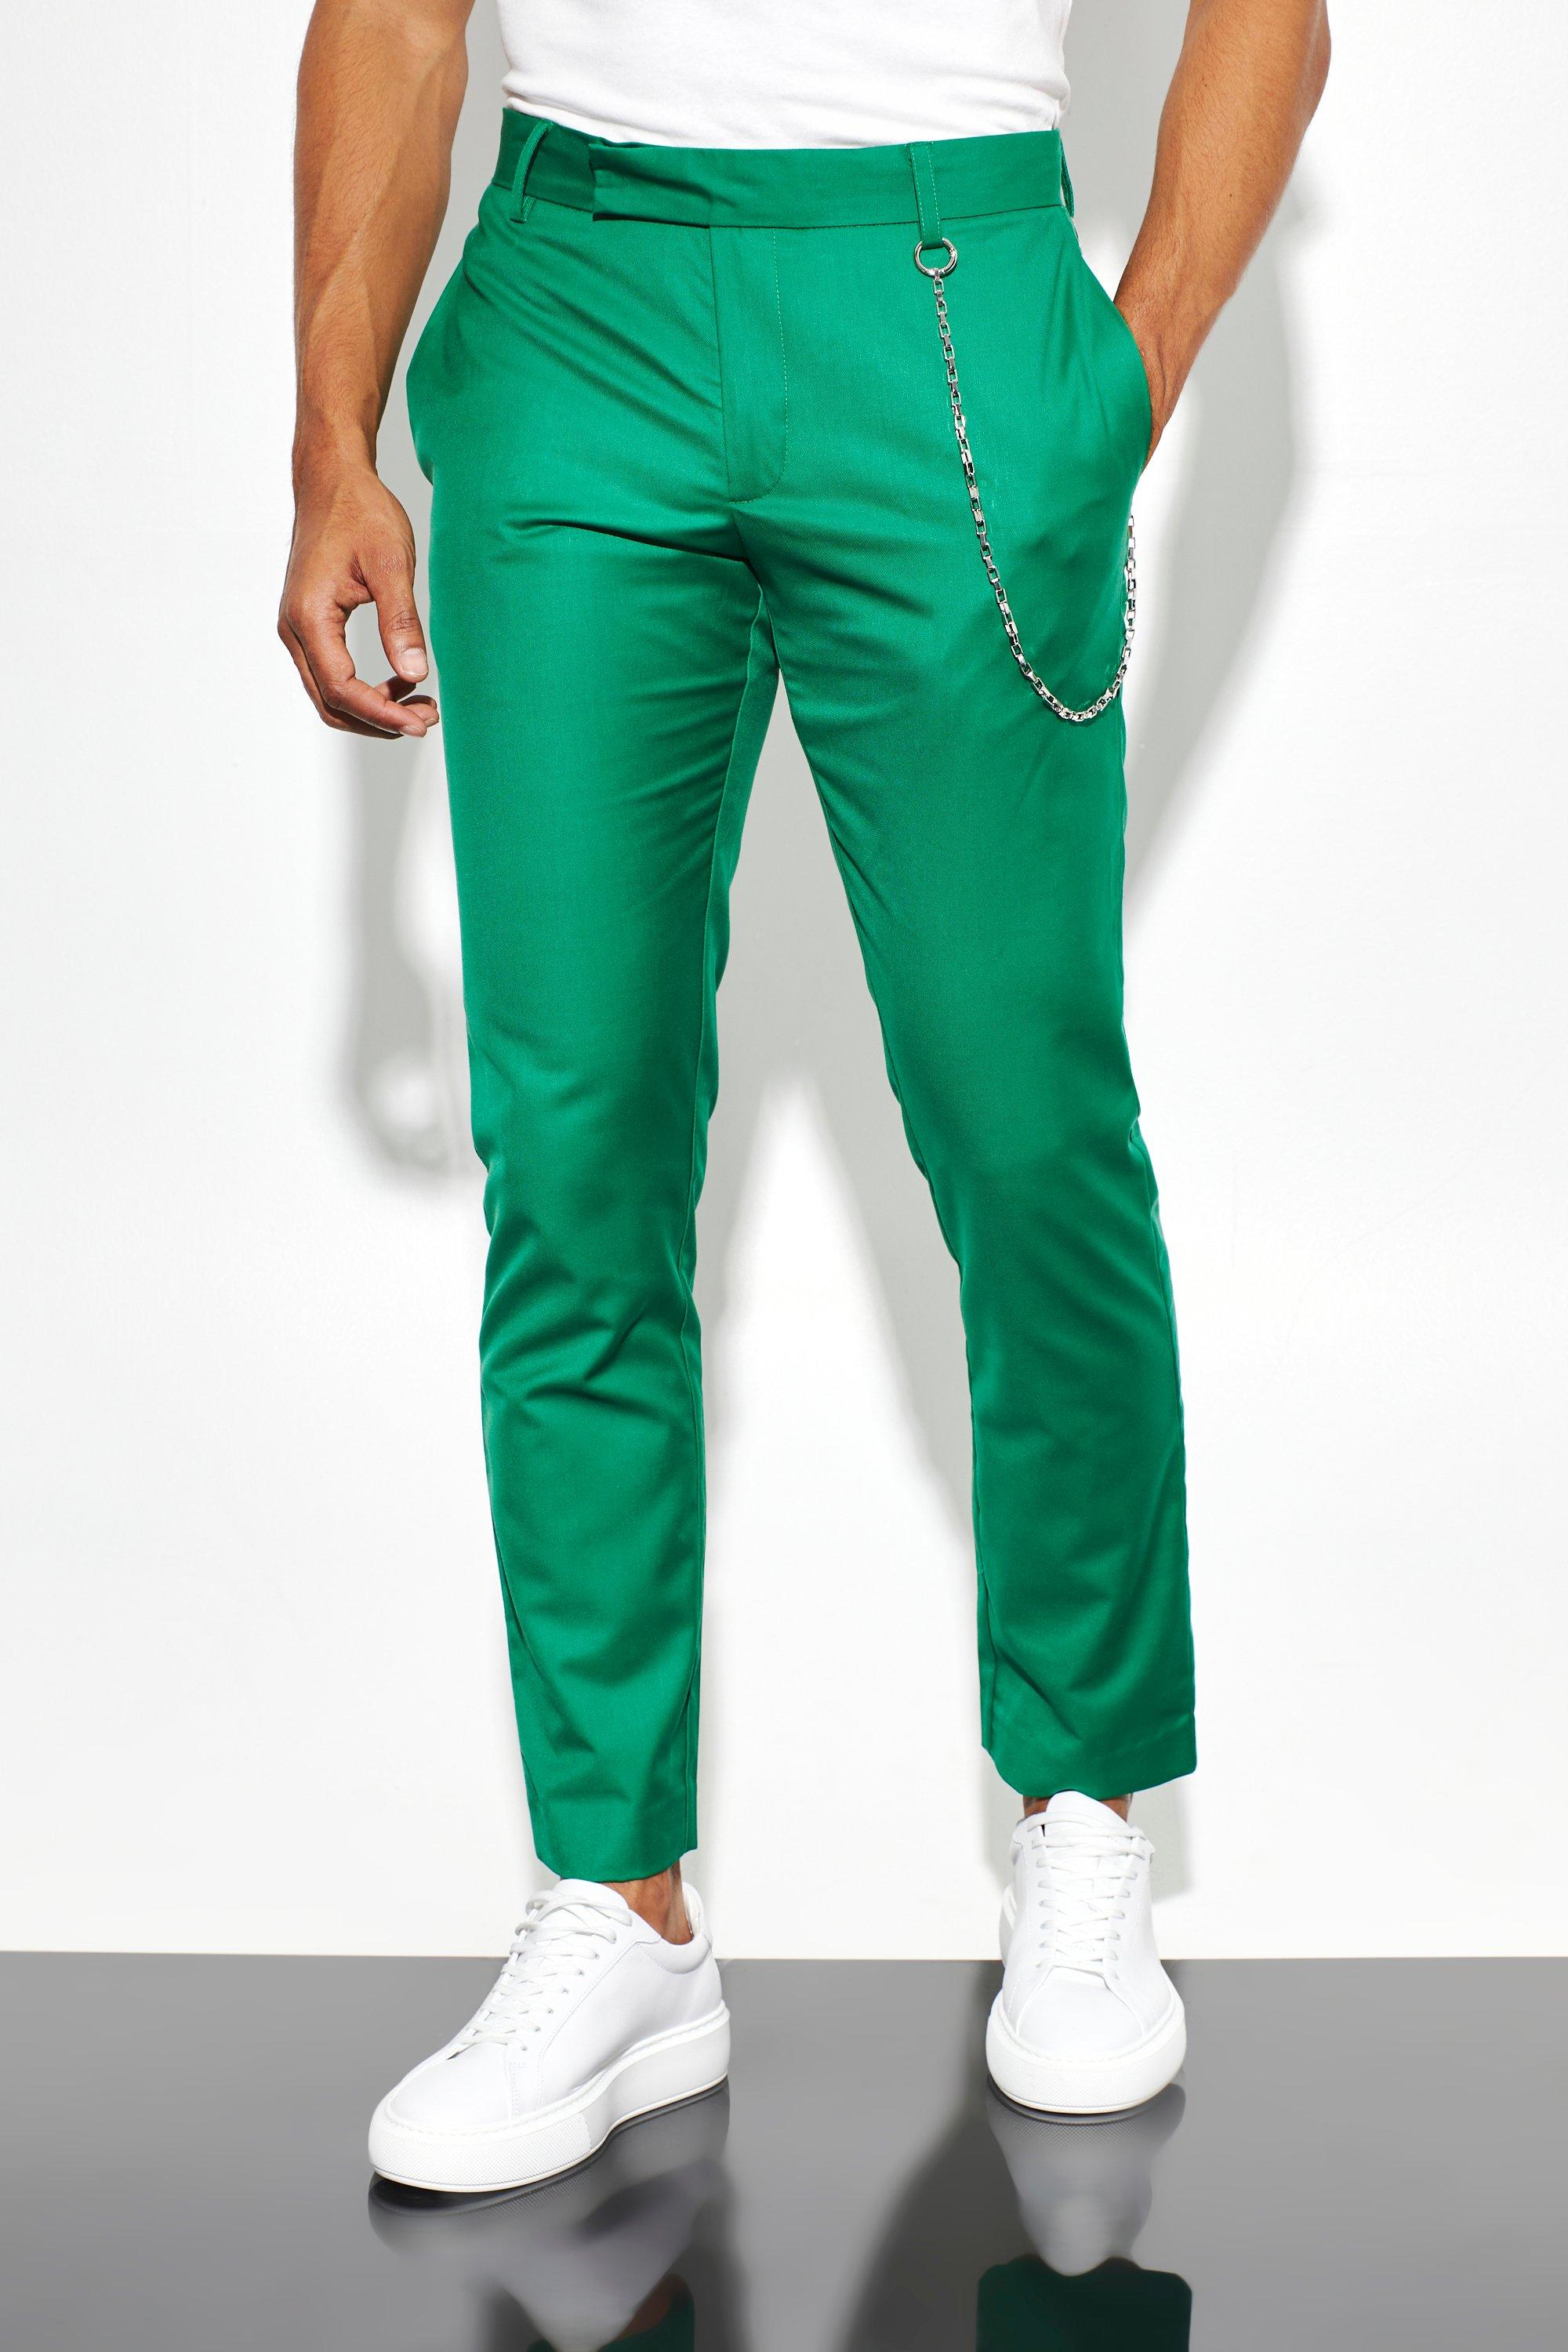 pantalon de costume slim homme - vert - 32r, vert